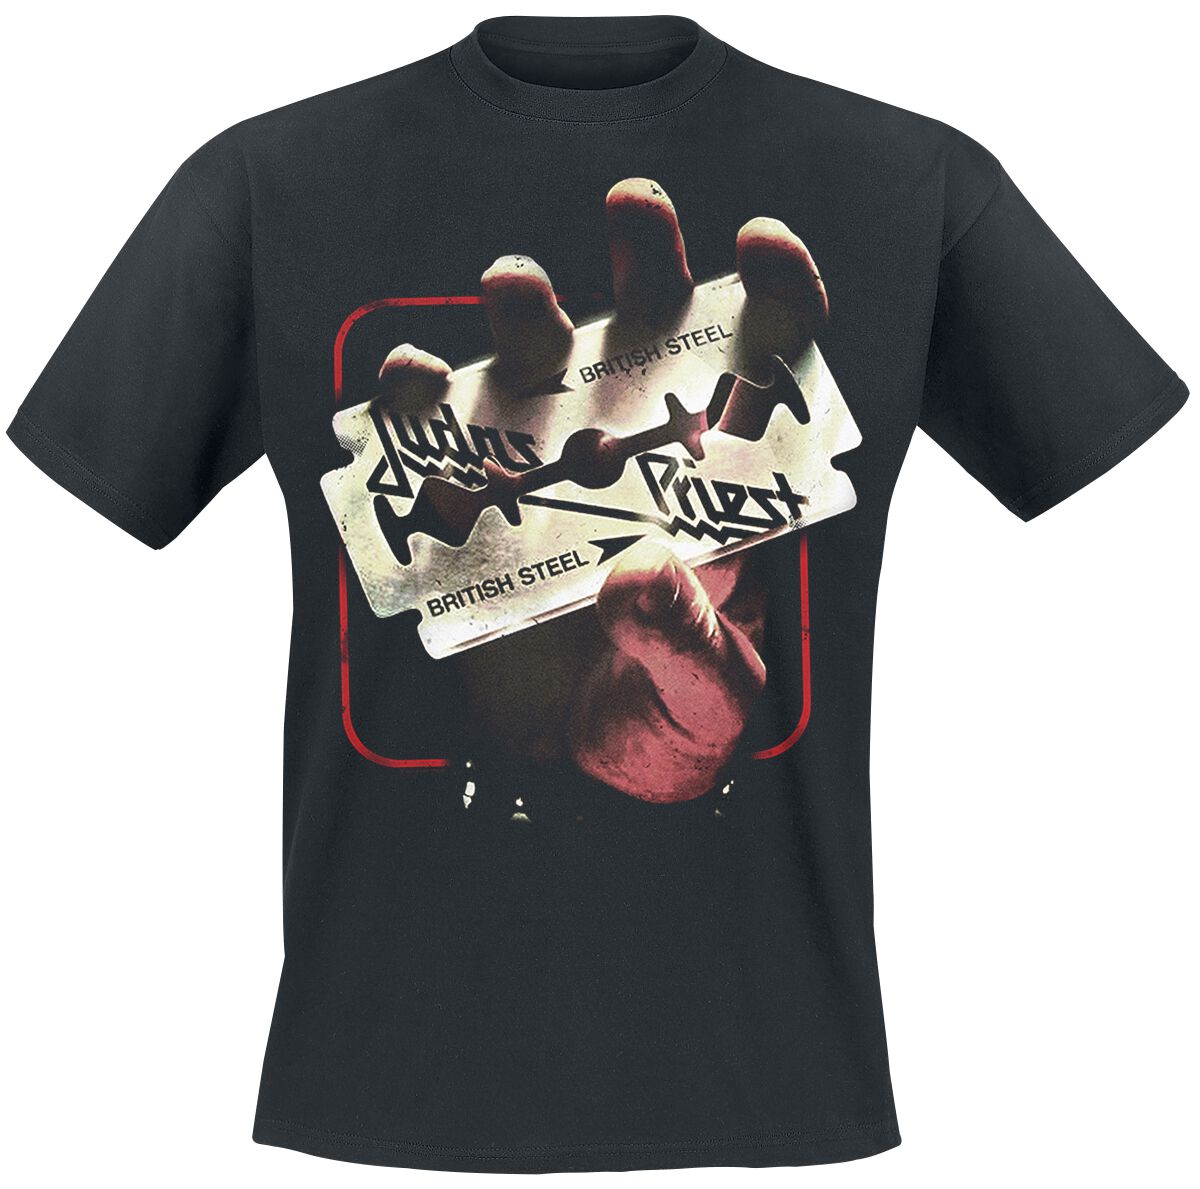 Judas Priest British Steel 50HMY Tour T-Shirt schwarz in XL